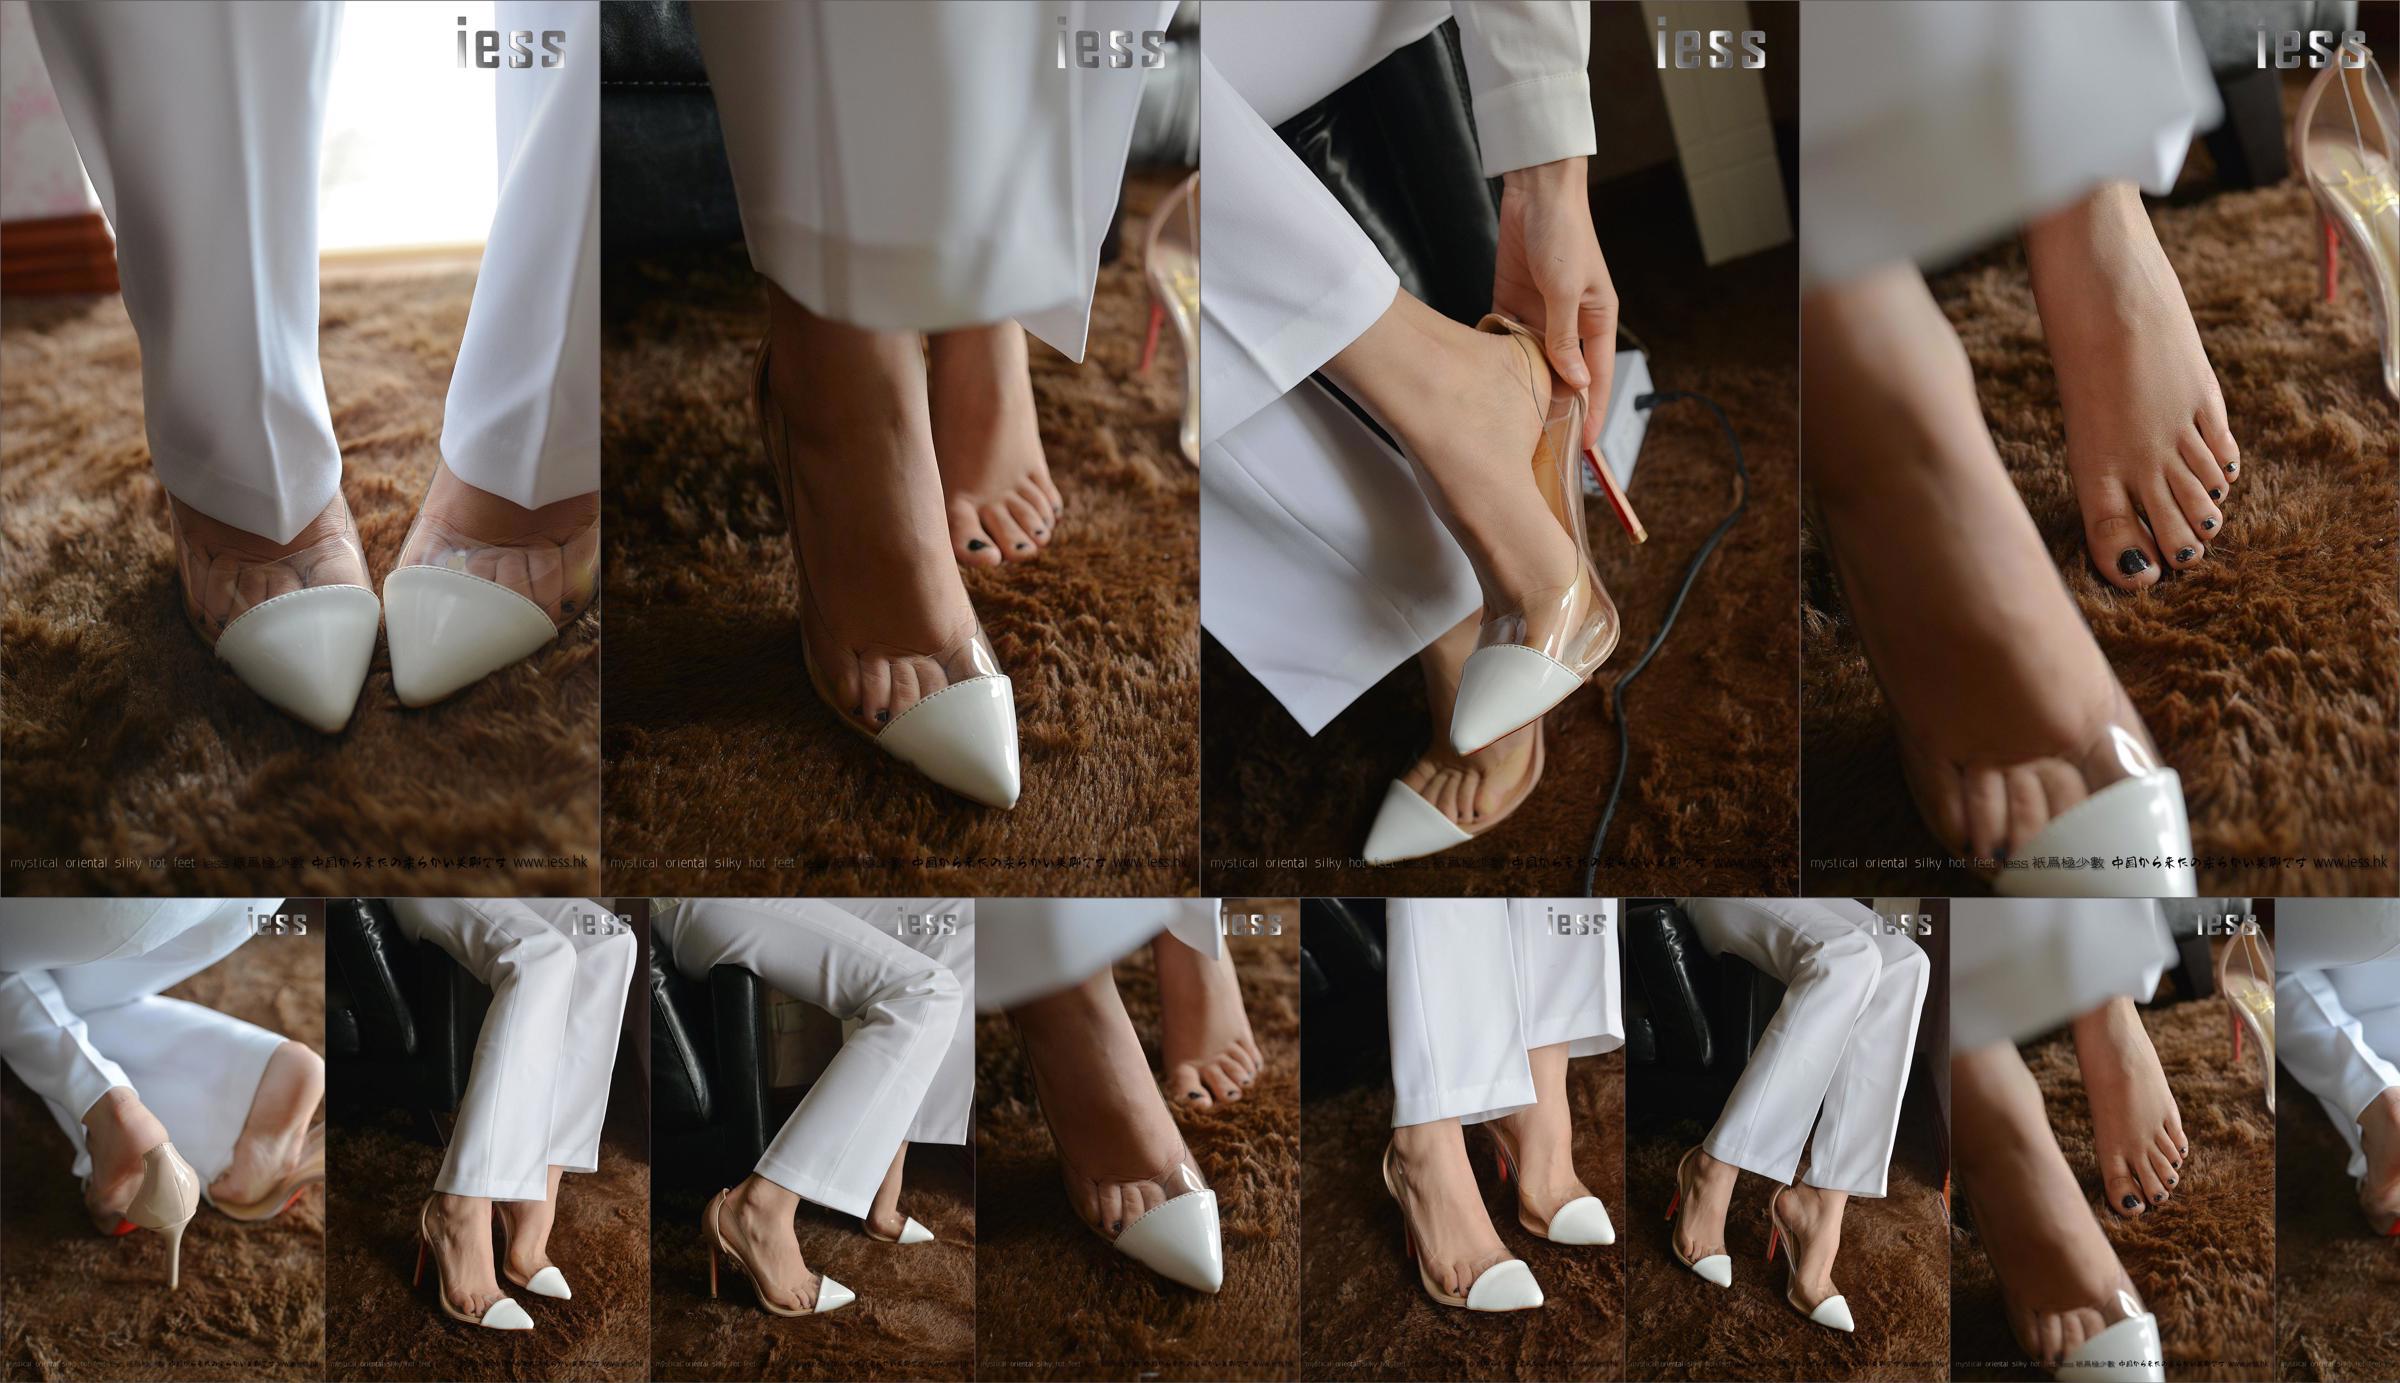 Seidiger Fuß Bento 058 Spannung "Collection-Bare Foot High Heels" [IESS Wei Si Fun Xiang] No.6858e6 Seite 1